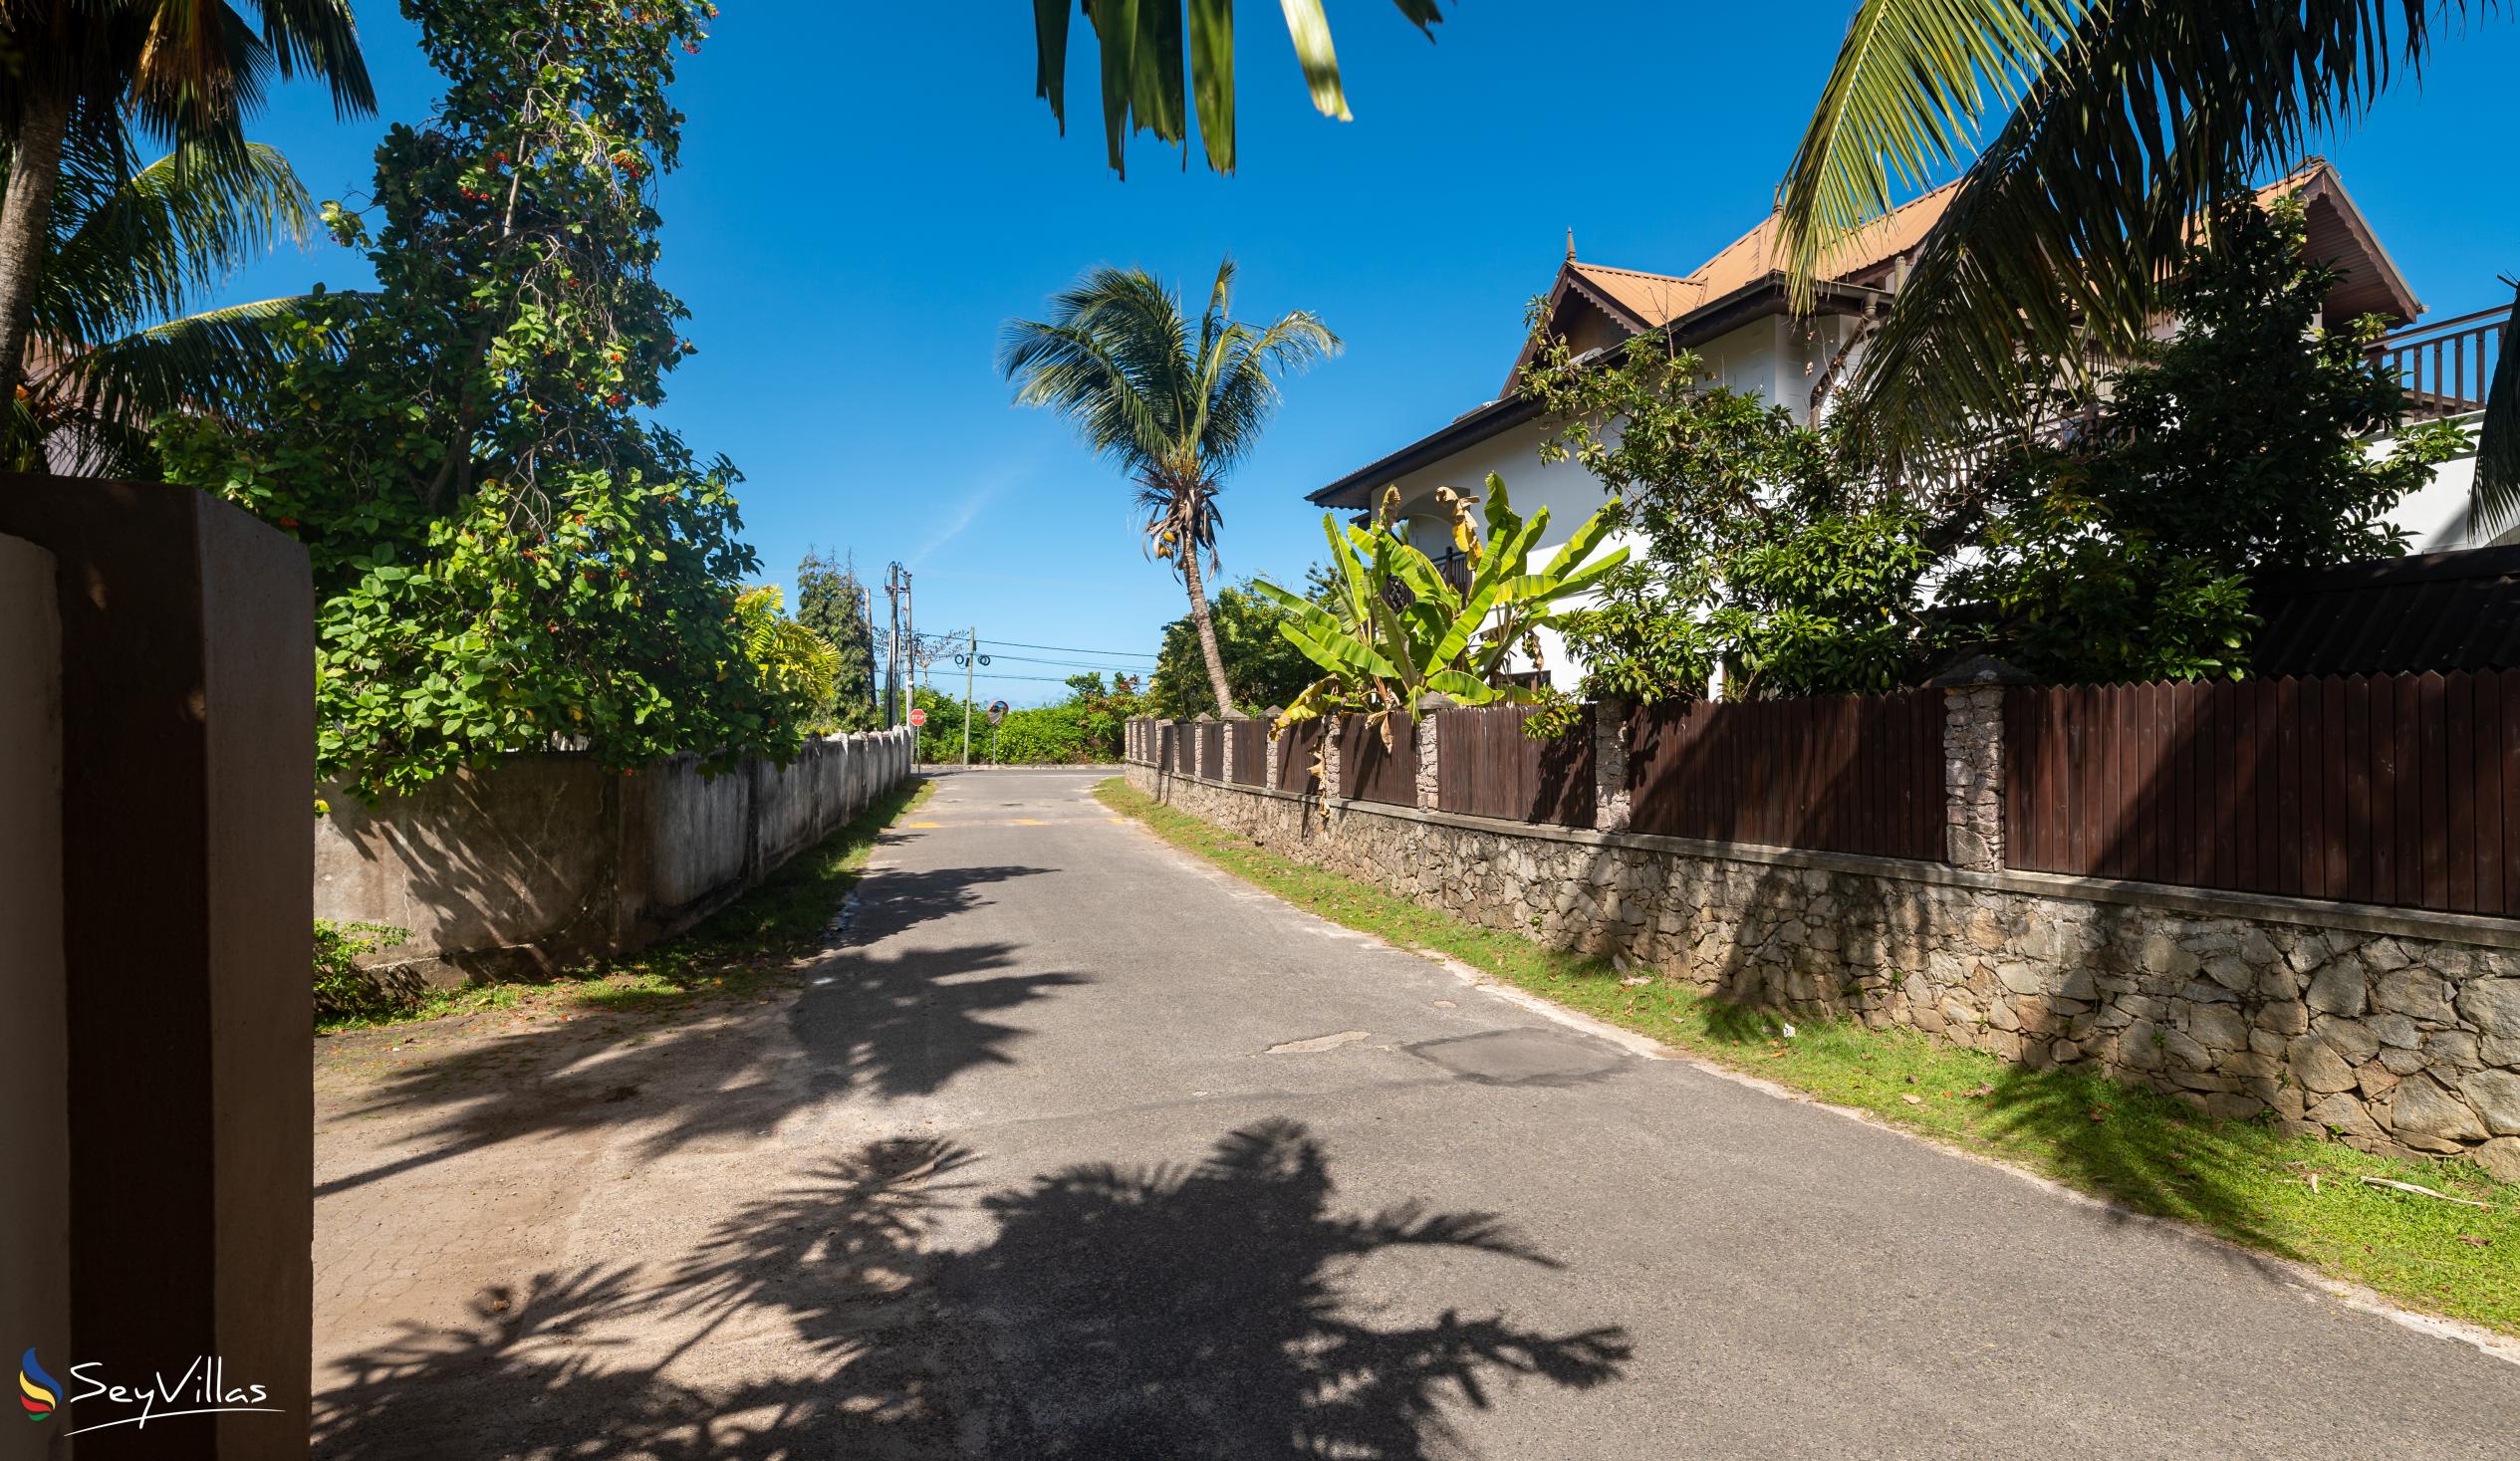 Foto 42: Villa Caballero - Posizione - Mahé (Seychelles)